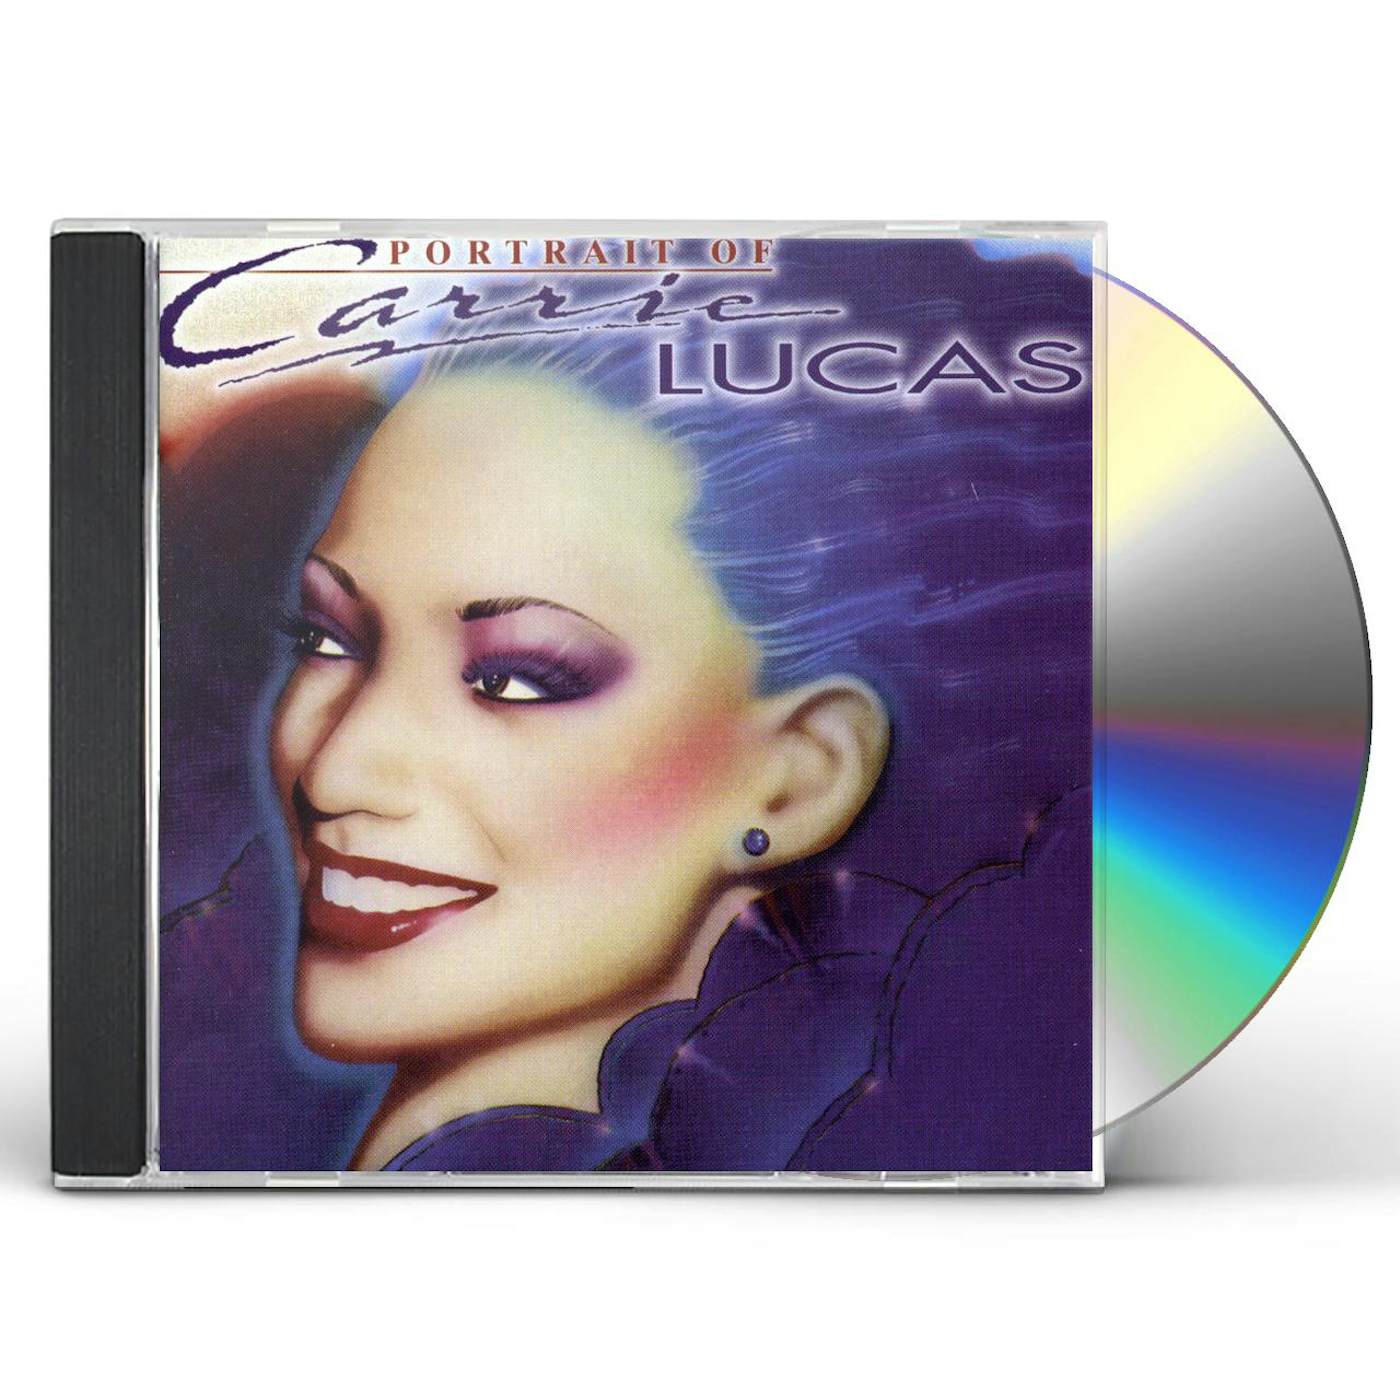 Carrie Lucas PORTRAIT CD